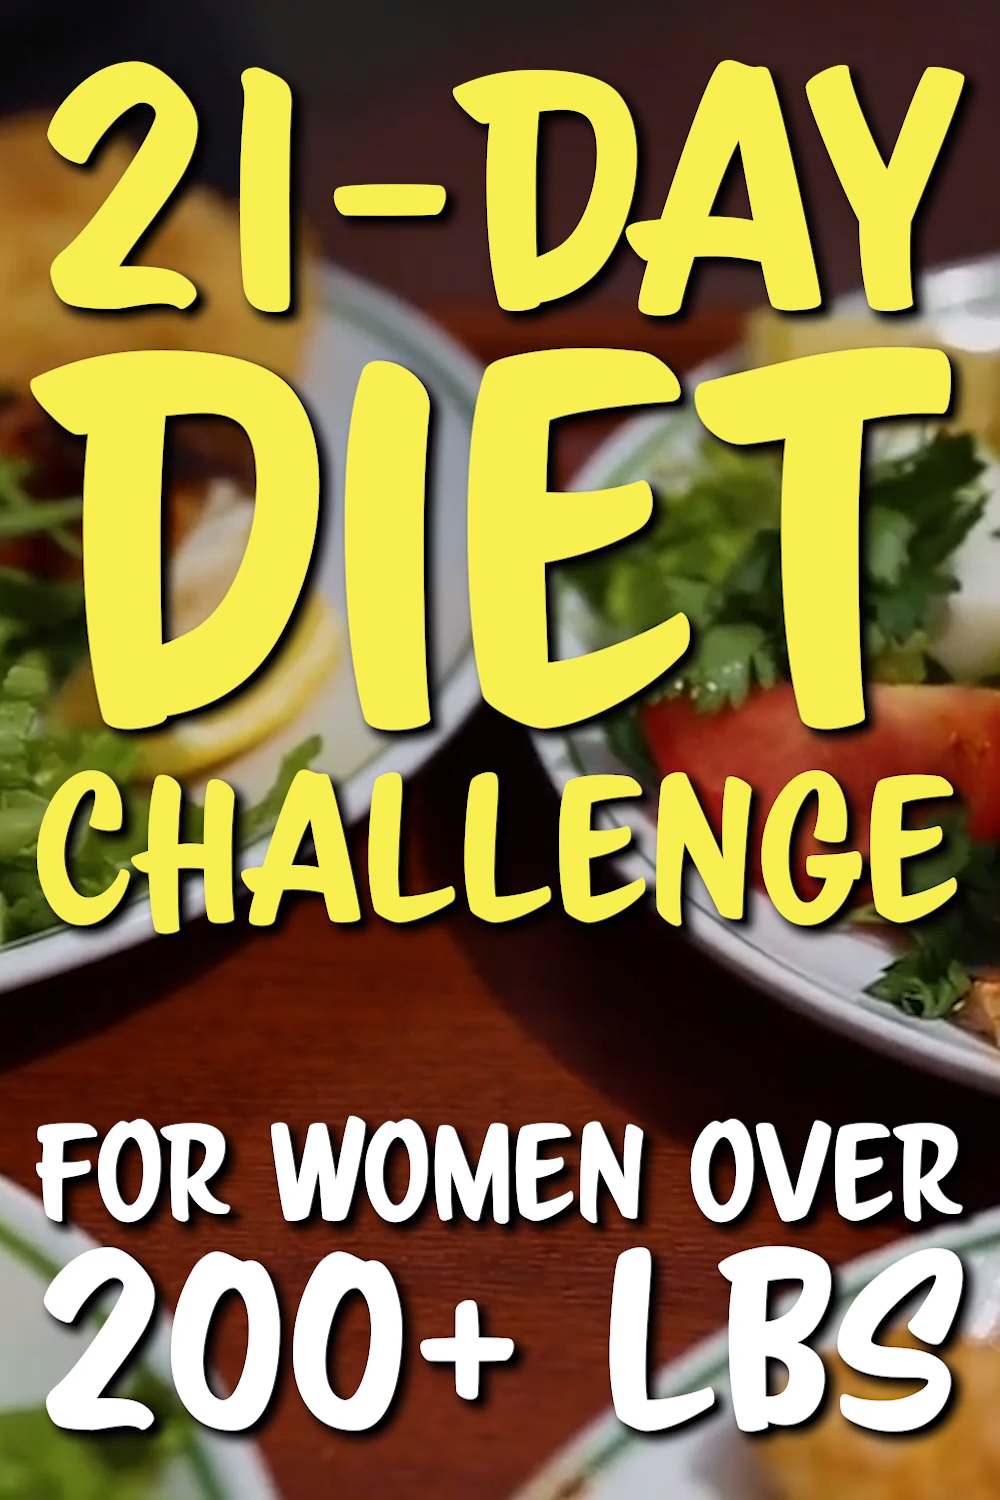 21-Day Diet Challenge for Women Over 200 Lbs -   20 diet Challenge videos ideas